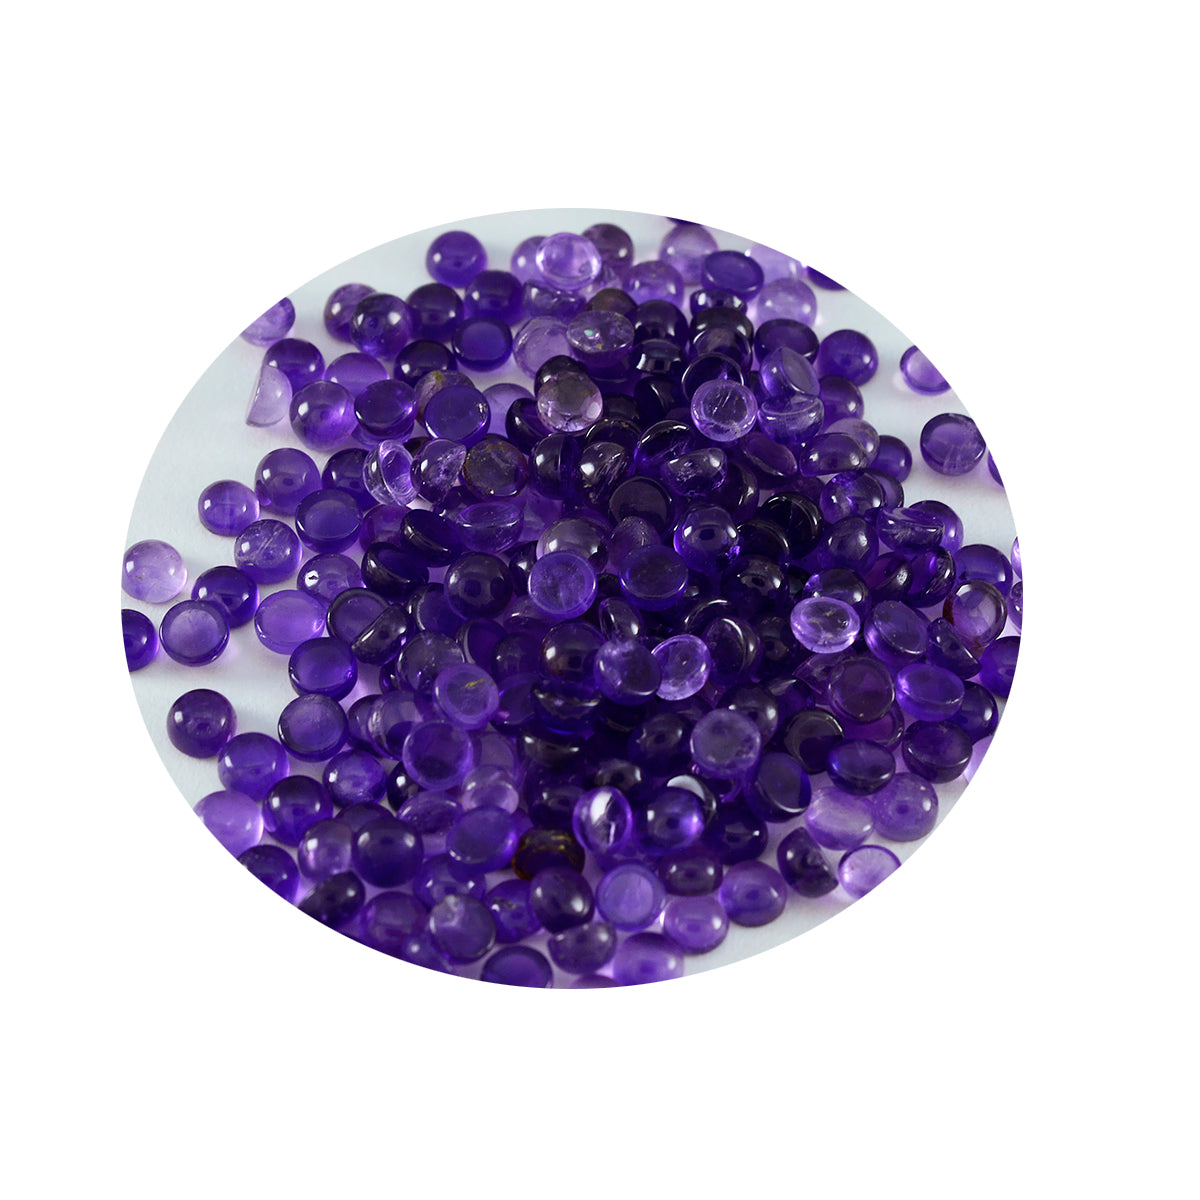 Riyogems 1 pieza cabujón de amatista púrpura 4x4mm forma redonda gema suelta de excelente calidad